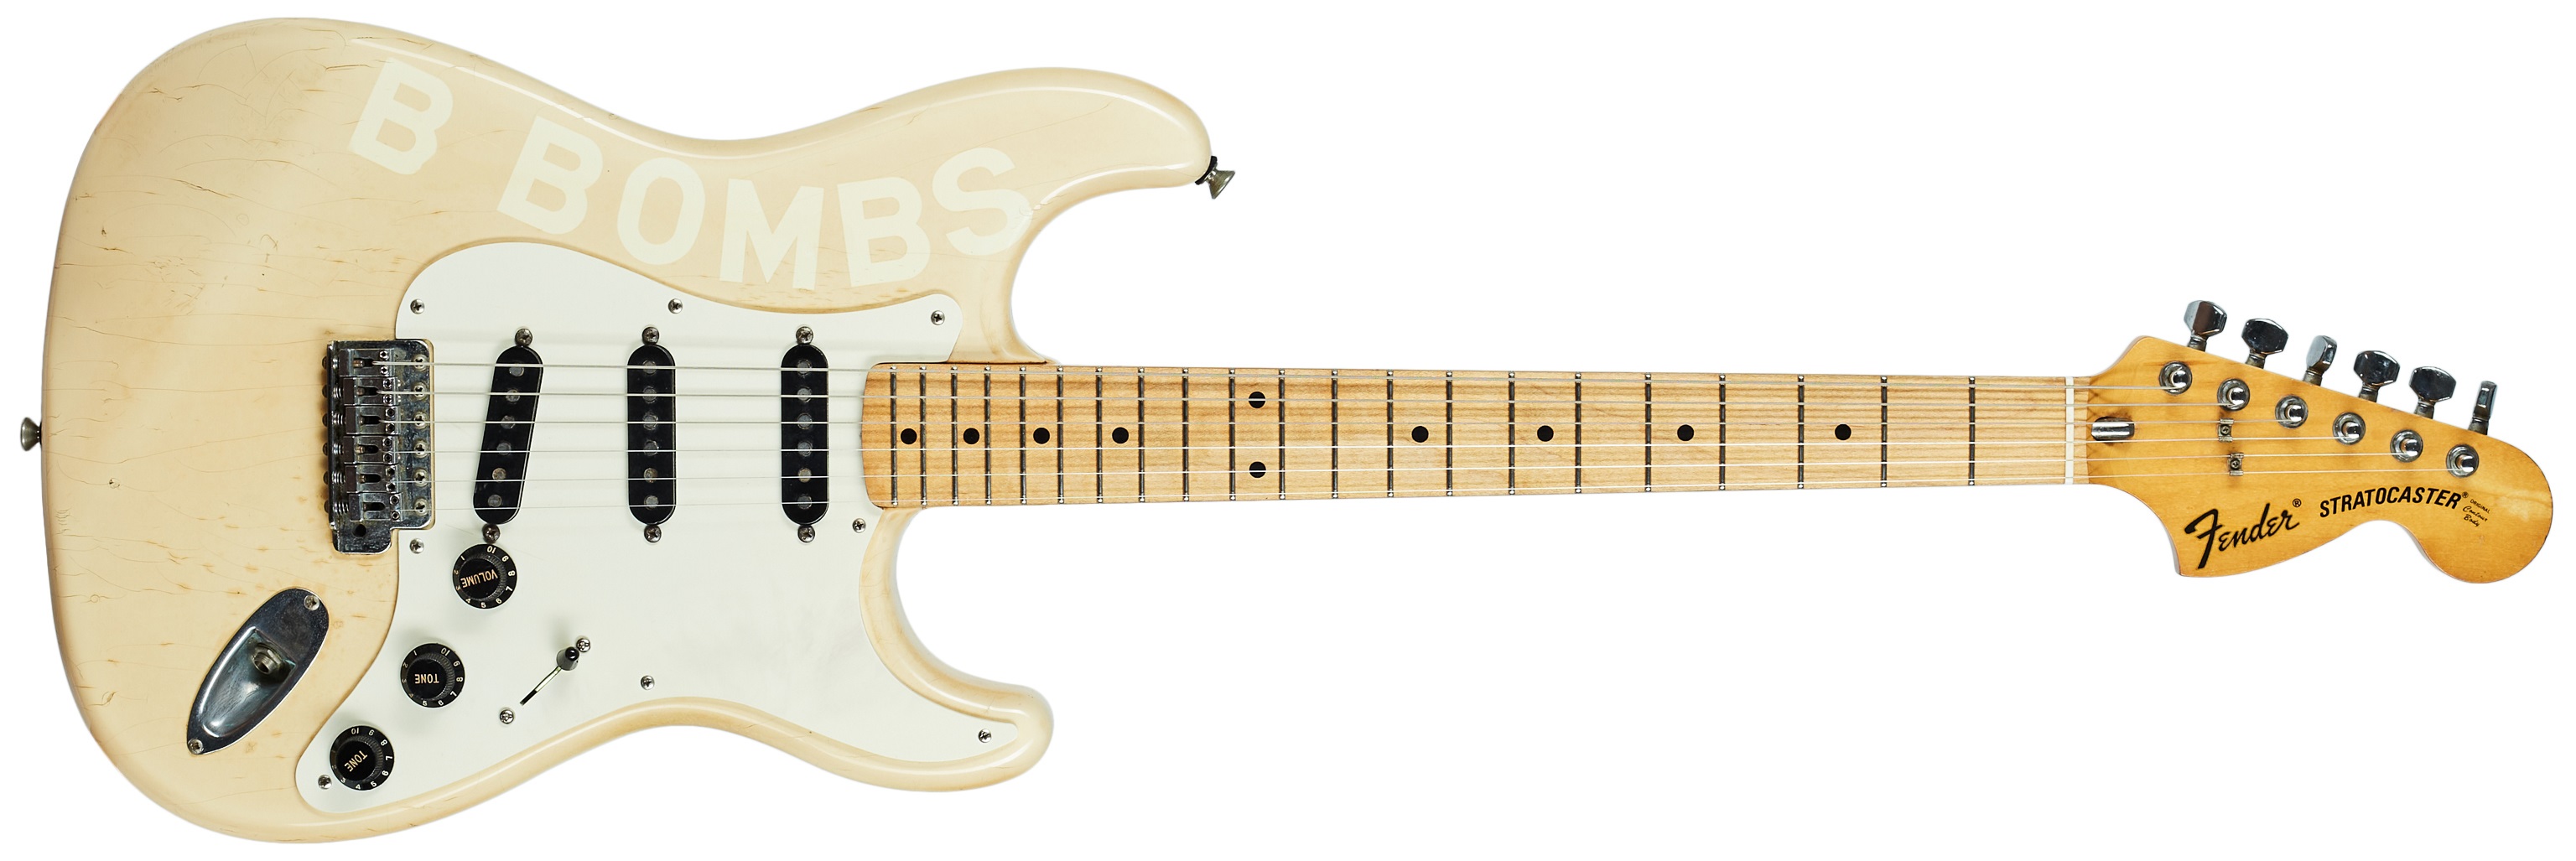 Fender 1985 Stratocaster ST72 Japan "B-Bomb"